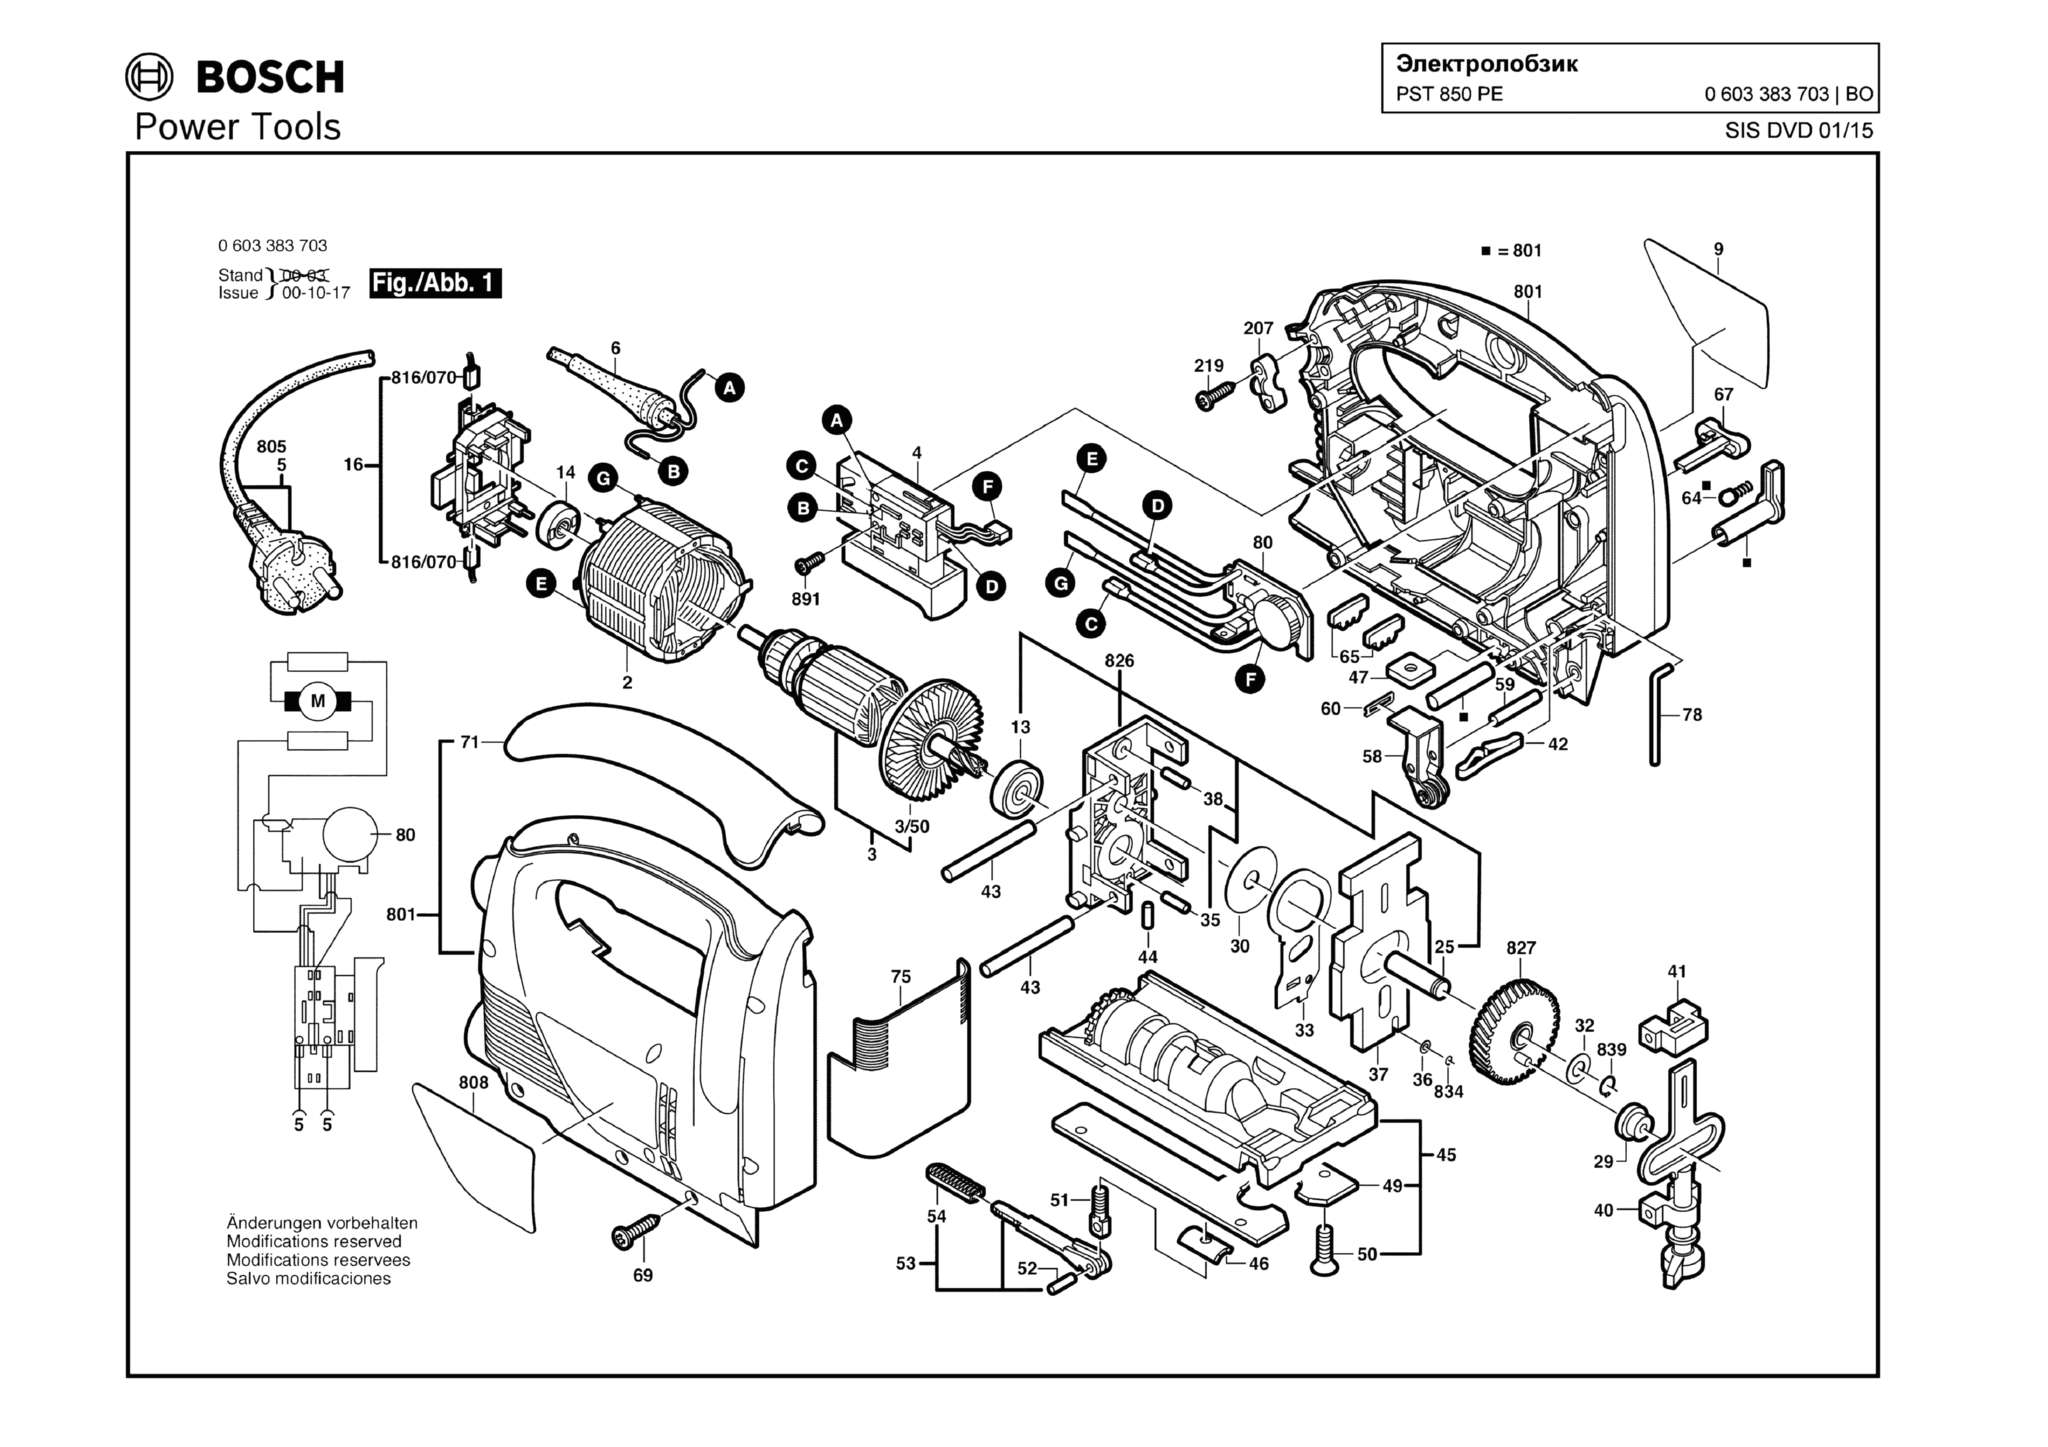 Запчасти, схема и деталировка Bosch PST 850 PE (ТИП 0603383703)